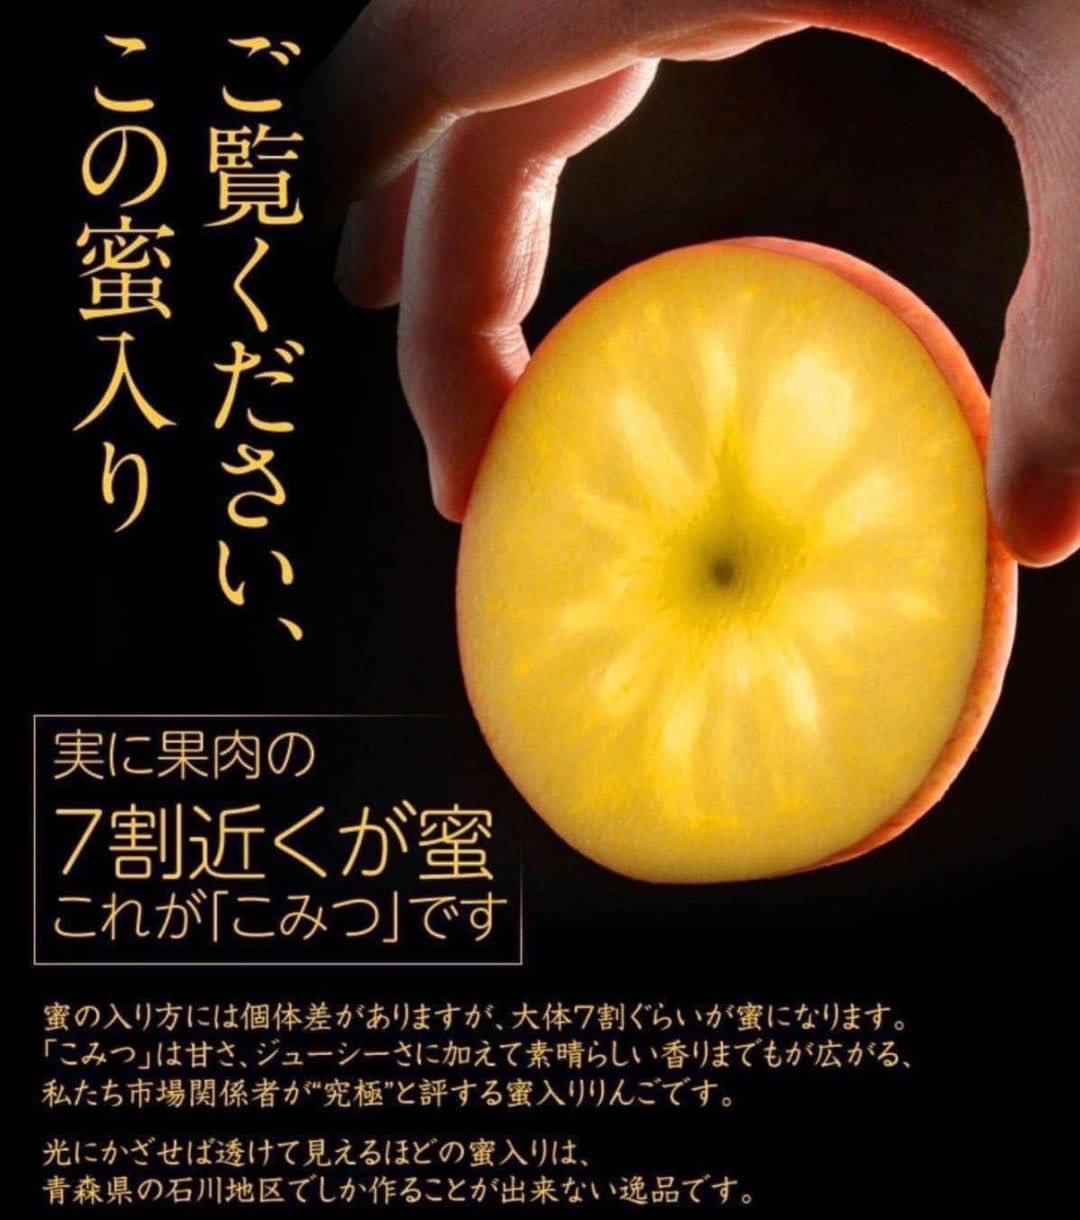 【專業農】日本 青森《極限量 神級蜜蘋果品種》✨頂級 美人 糖蜜蘋果 8玉禮盒